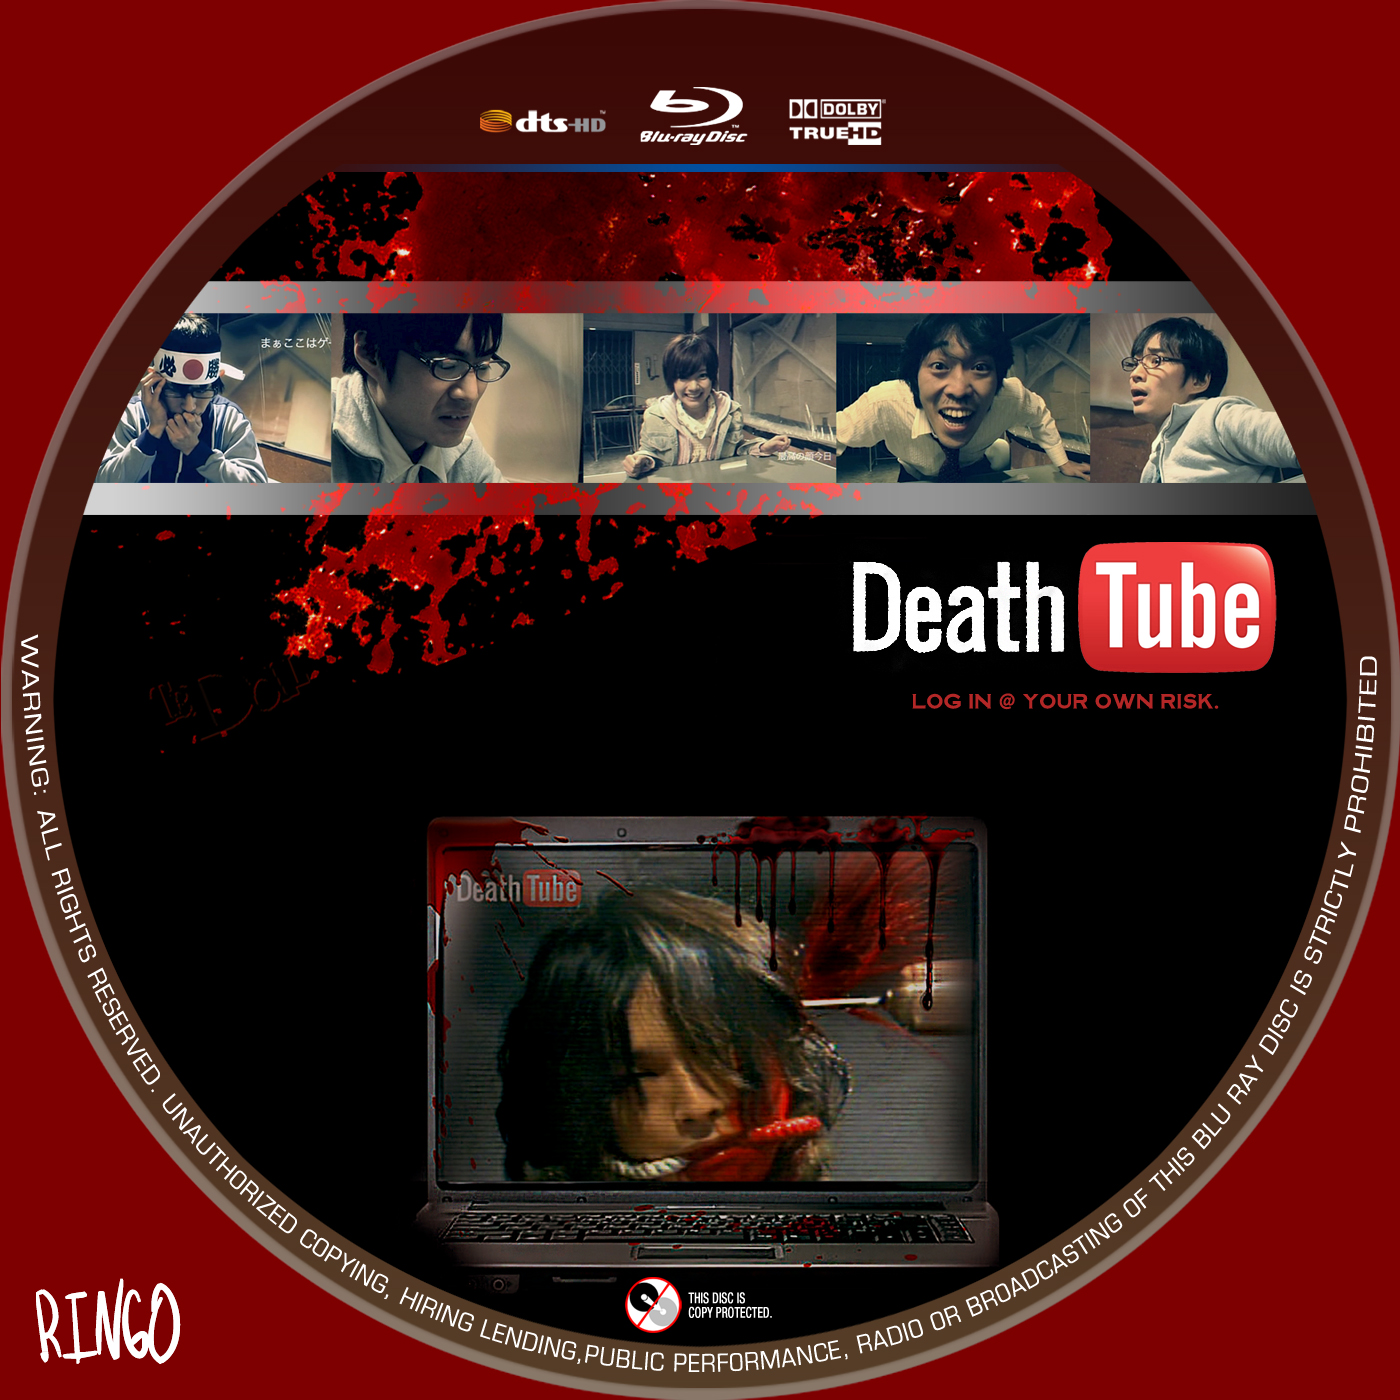 Death Tube Full Movie